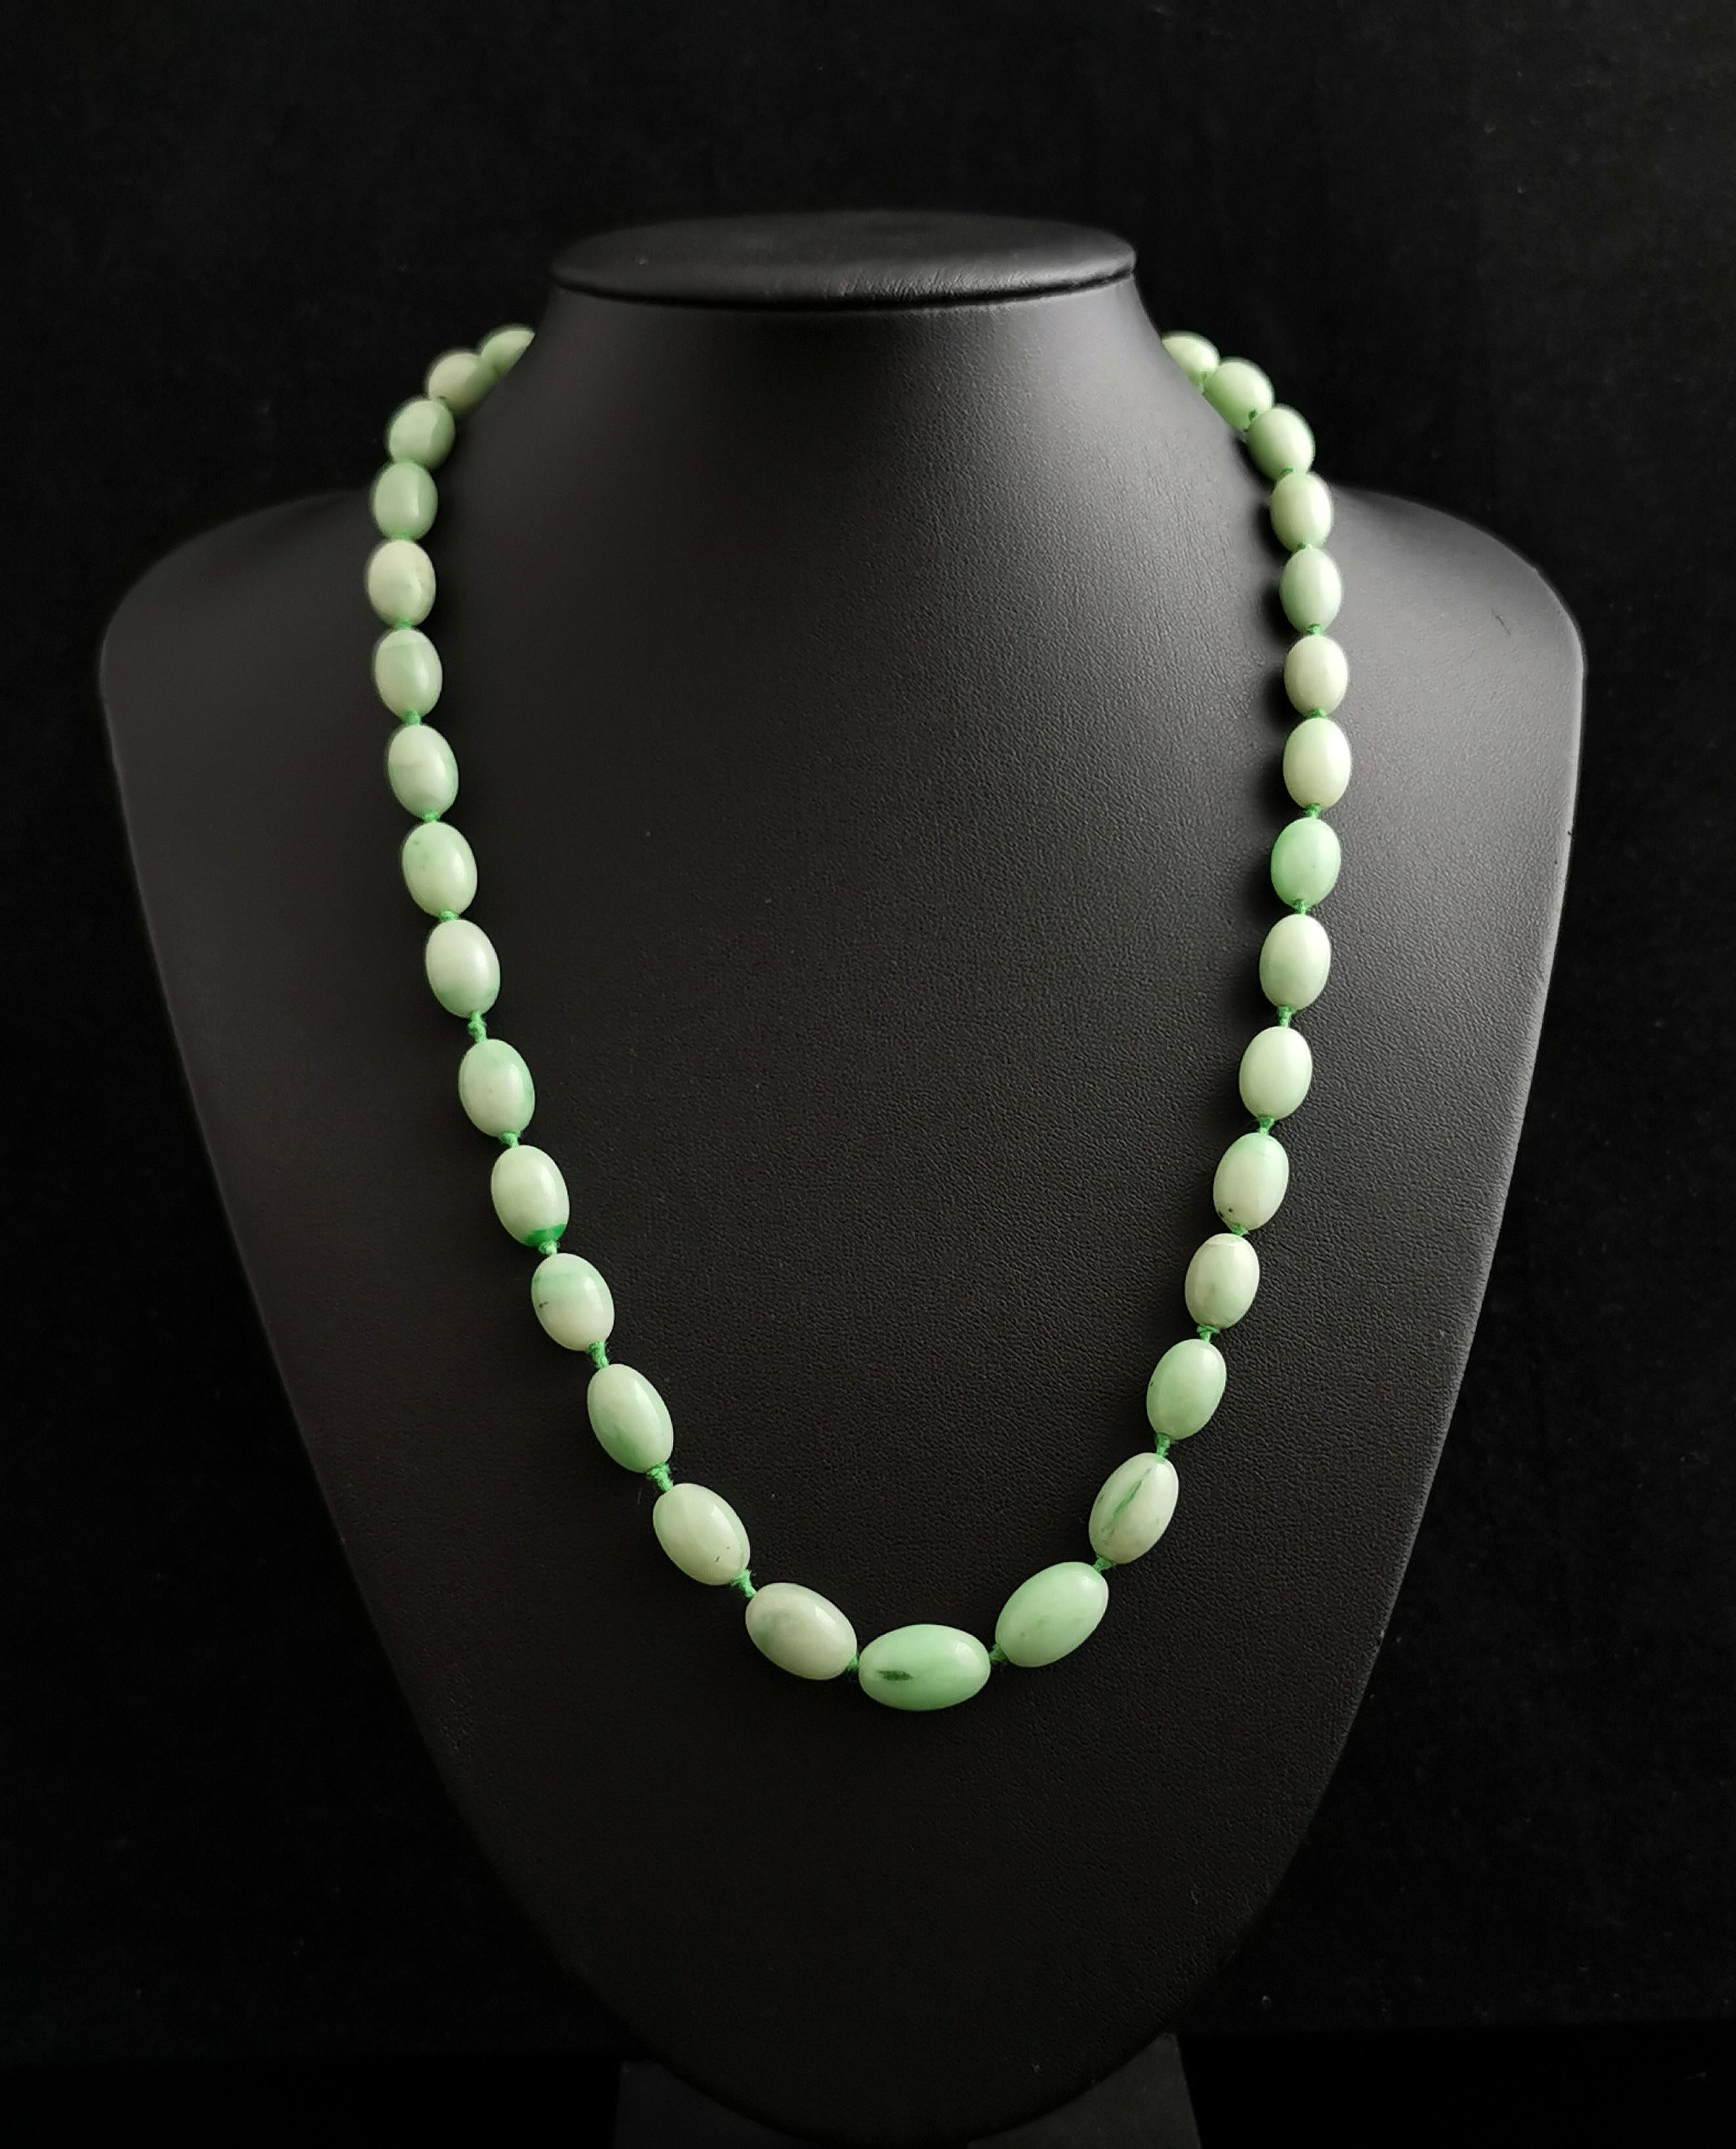 Eine schöne Vintage Art Deco Ära Jadeit Jade Perle Halskette.

Hübsche mintgrüne Perlen mit schönen Farbvariationen von fast weiß bis zu dunkleren Streifen und natürlich vorkommenden Flecken, alle fein von Hand geformt und fest auf einen